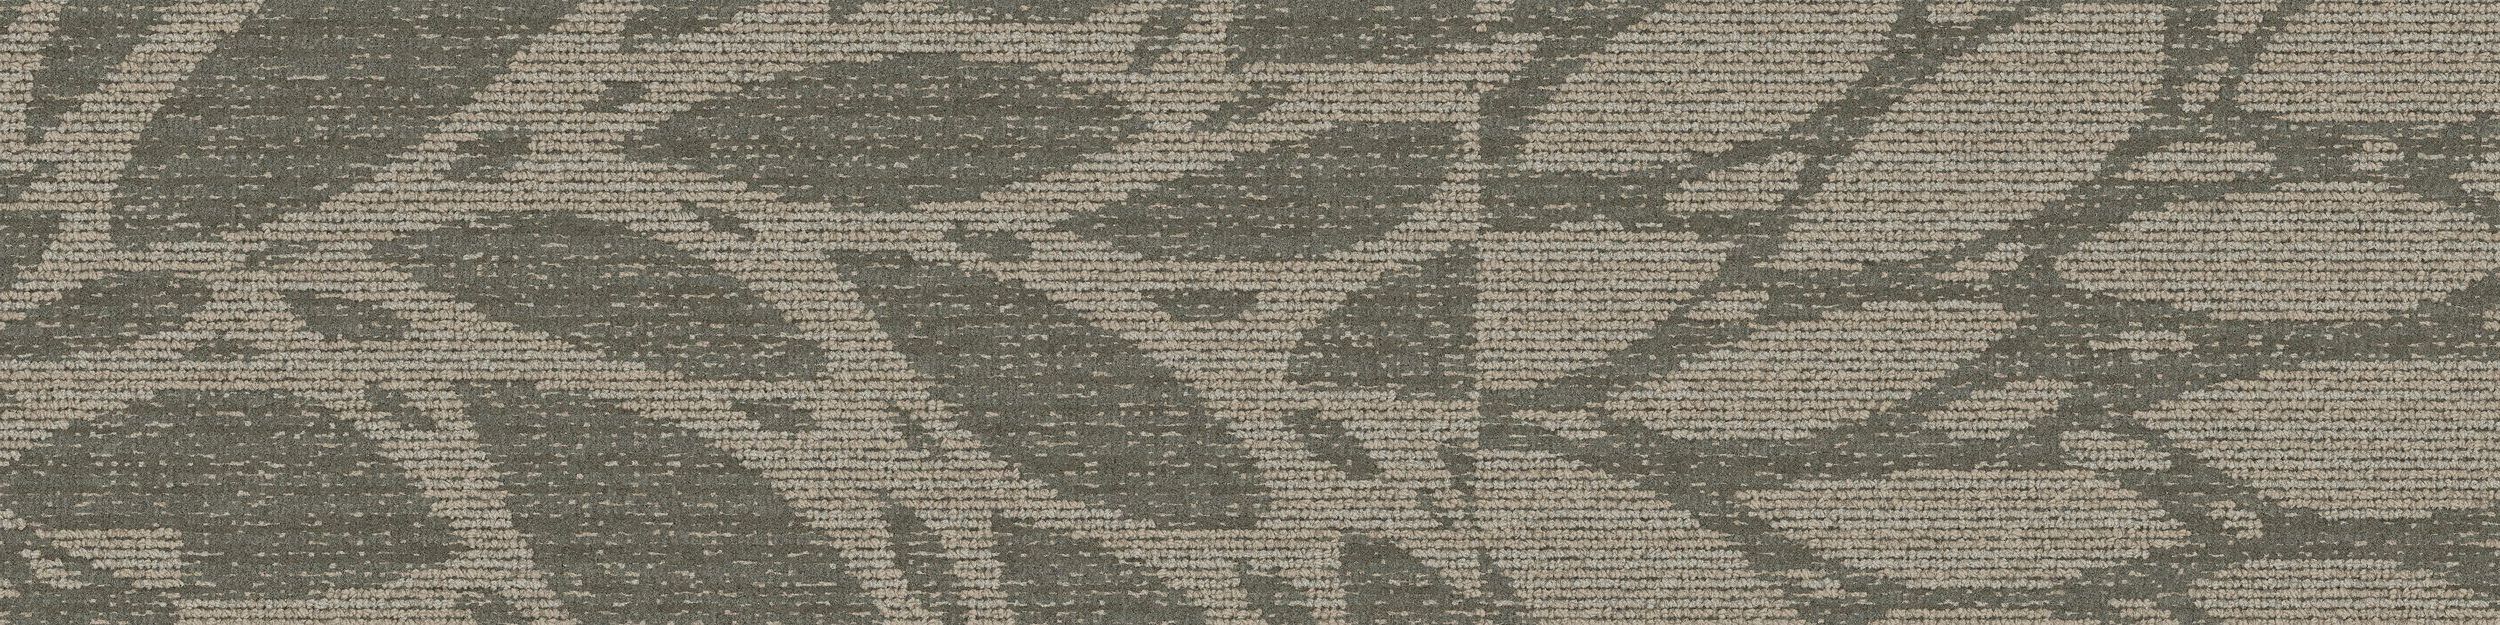 GN157 Carpet Tile In Pewter image number 2